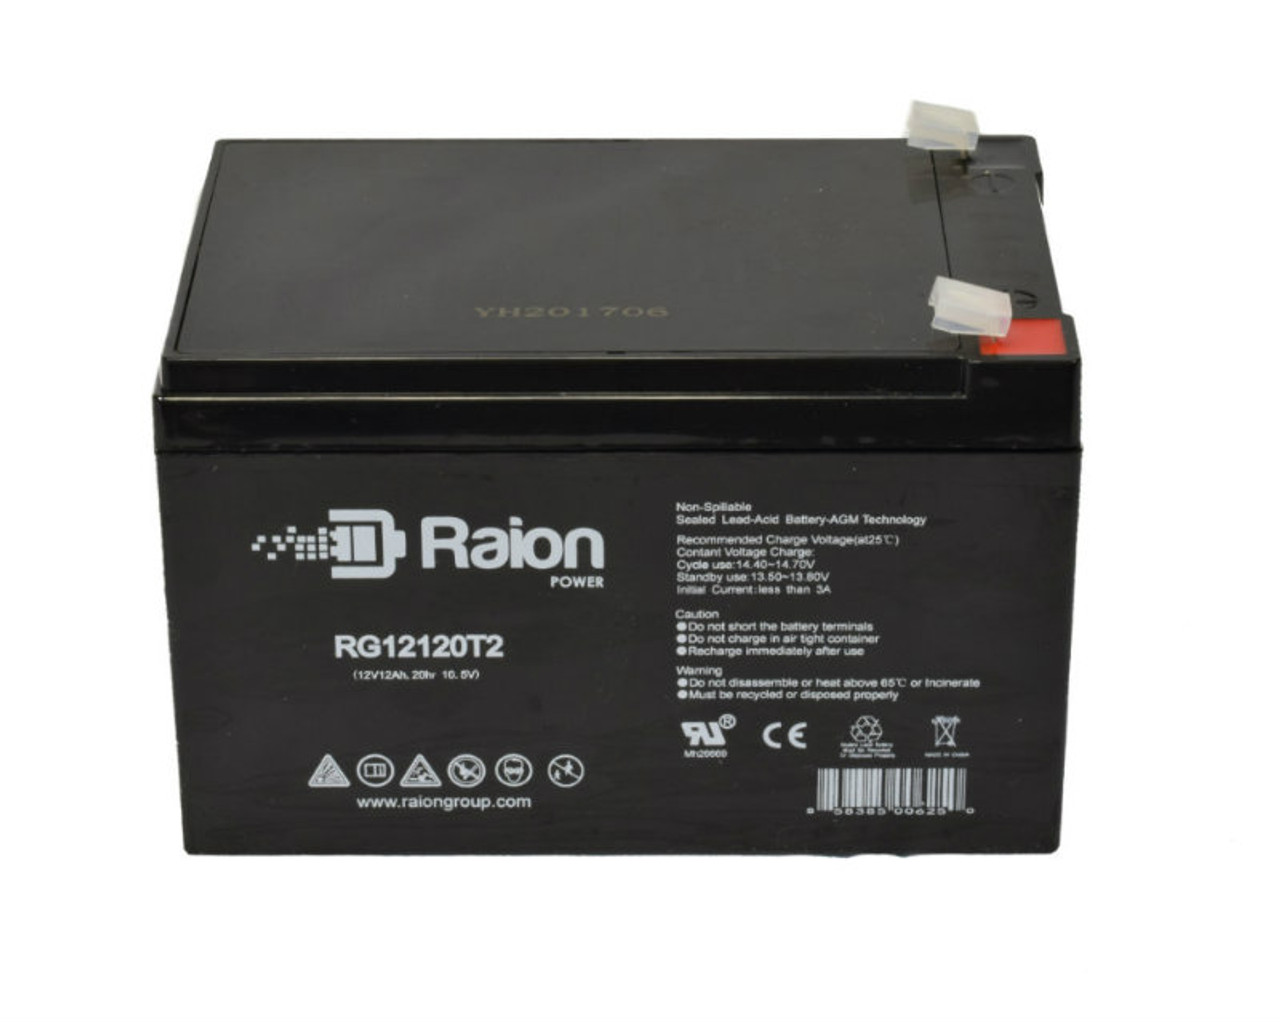 Raion Power RG12120T2 SLA Battery for Europower EV 15-12